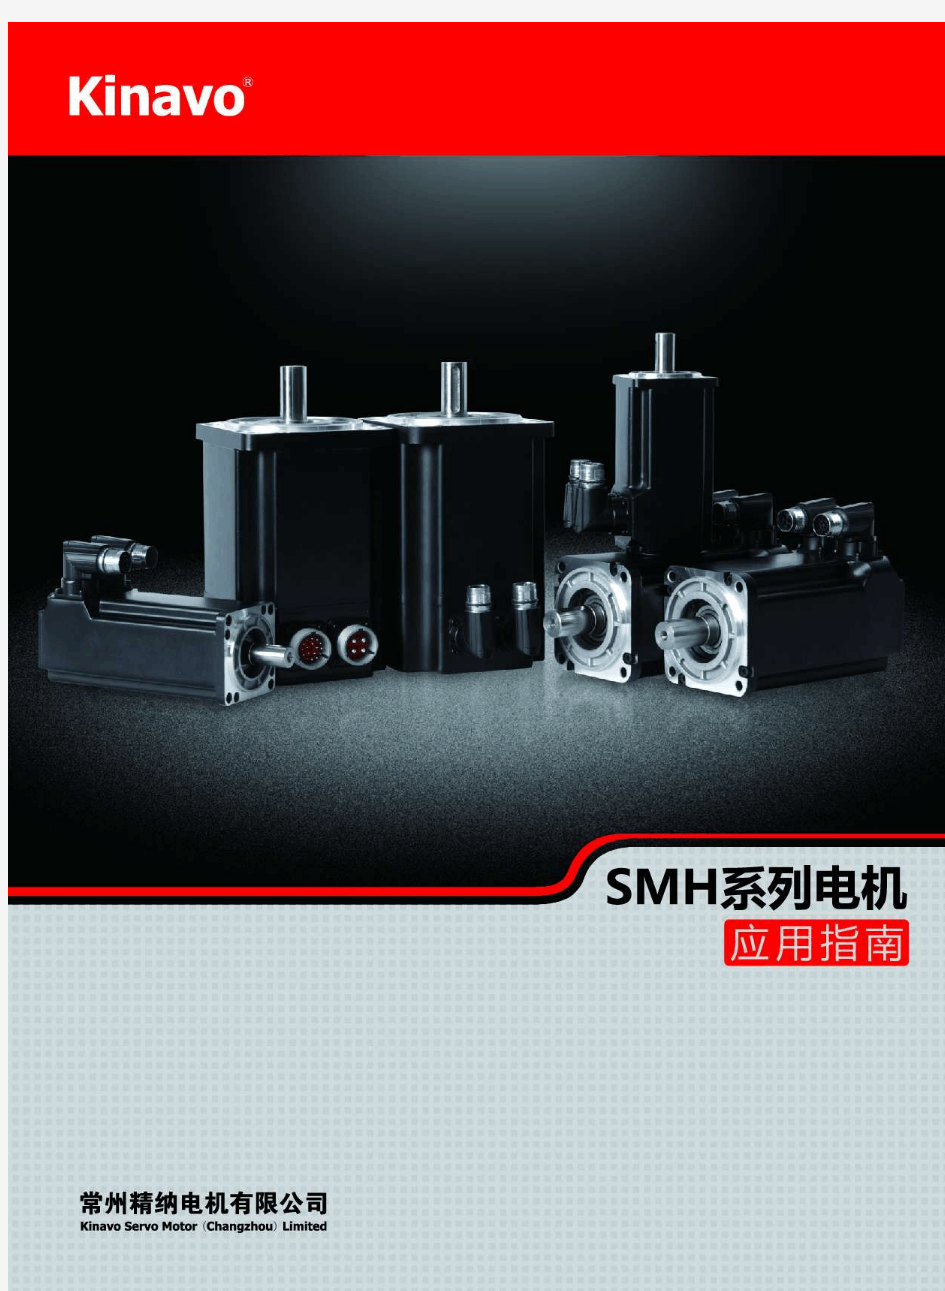 常州精纳电机有限公司SMH伺服电机选型手册-简体中文版